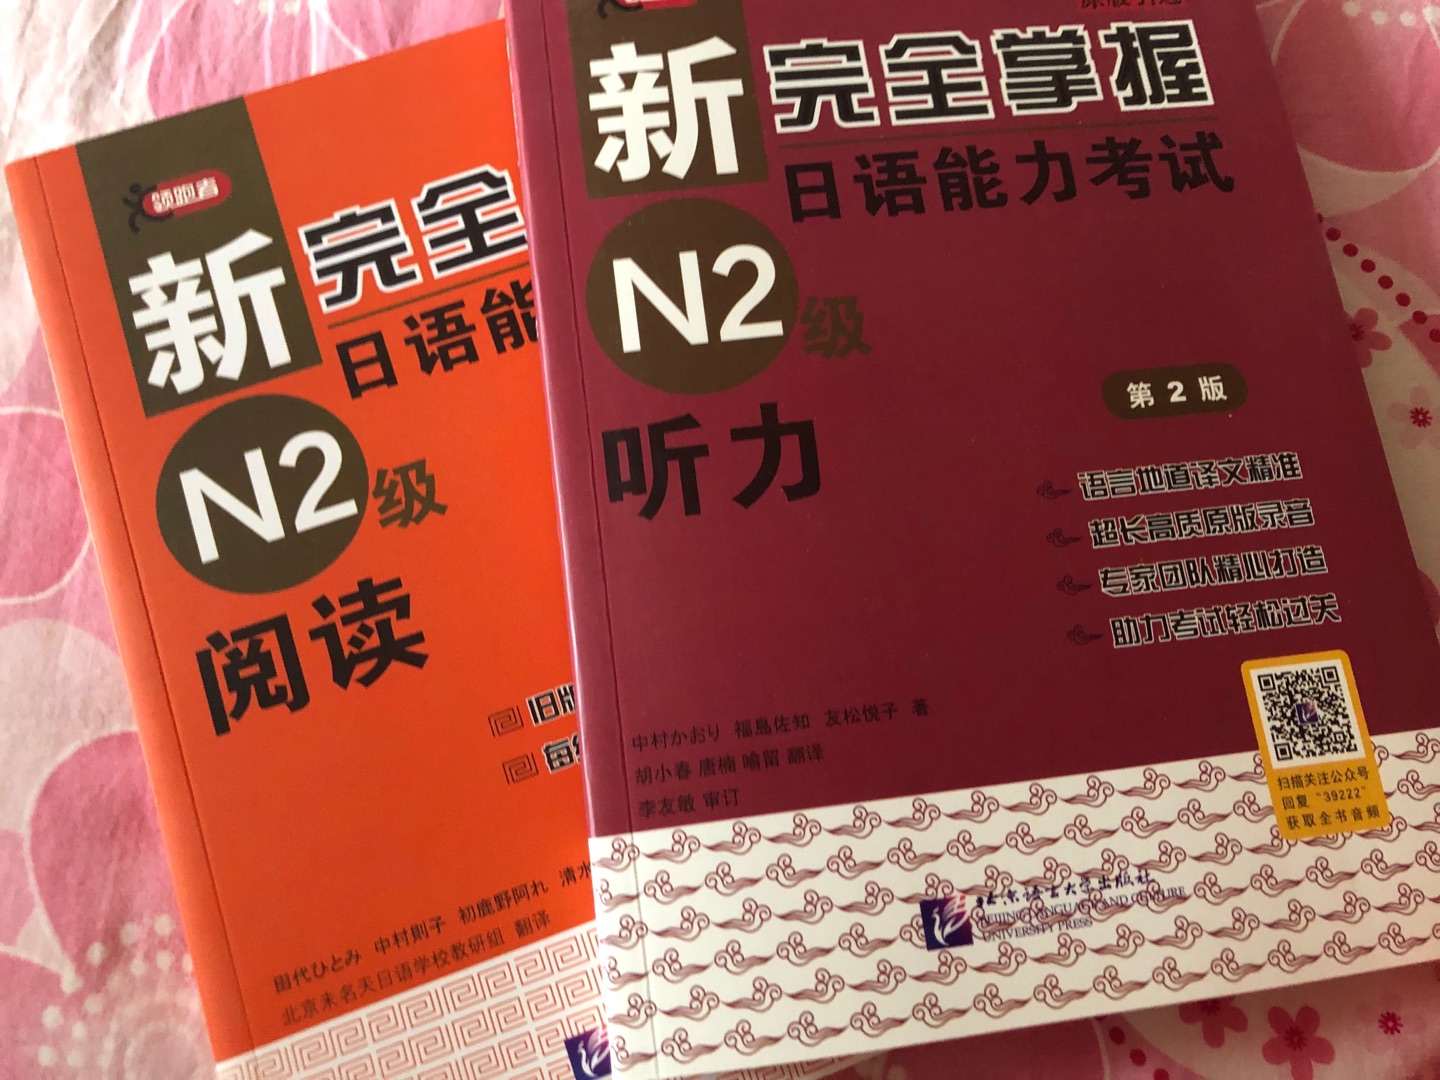 朋友推荐的，买来学日语。书的质量不错，就是最近没时间看书，哎。